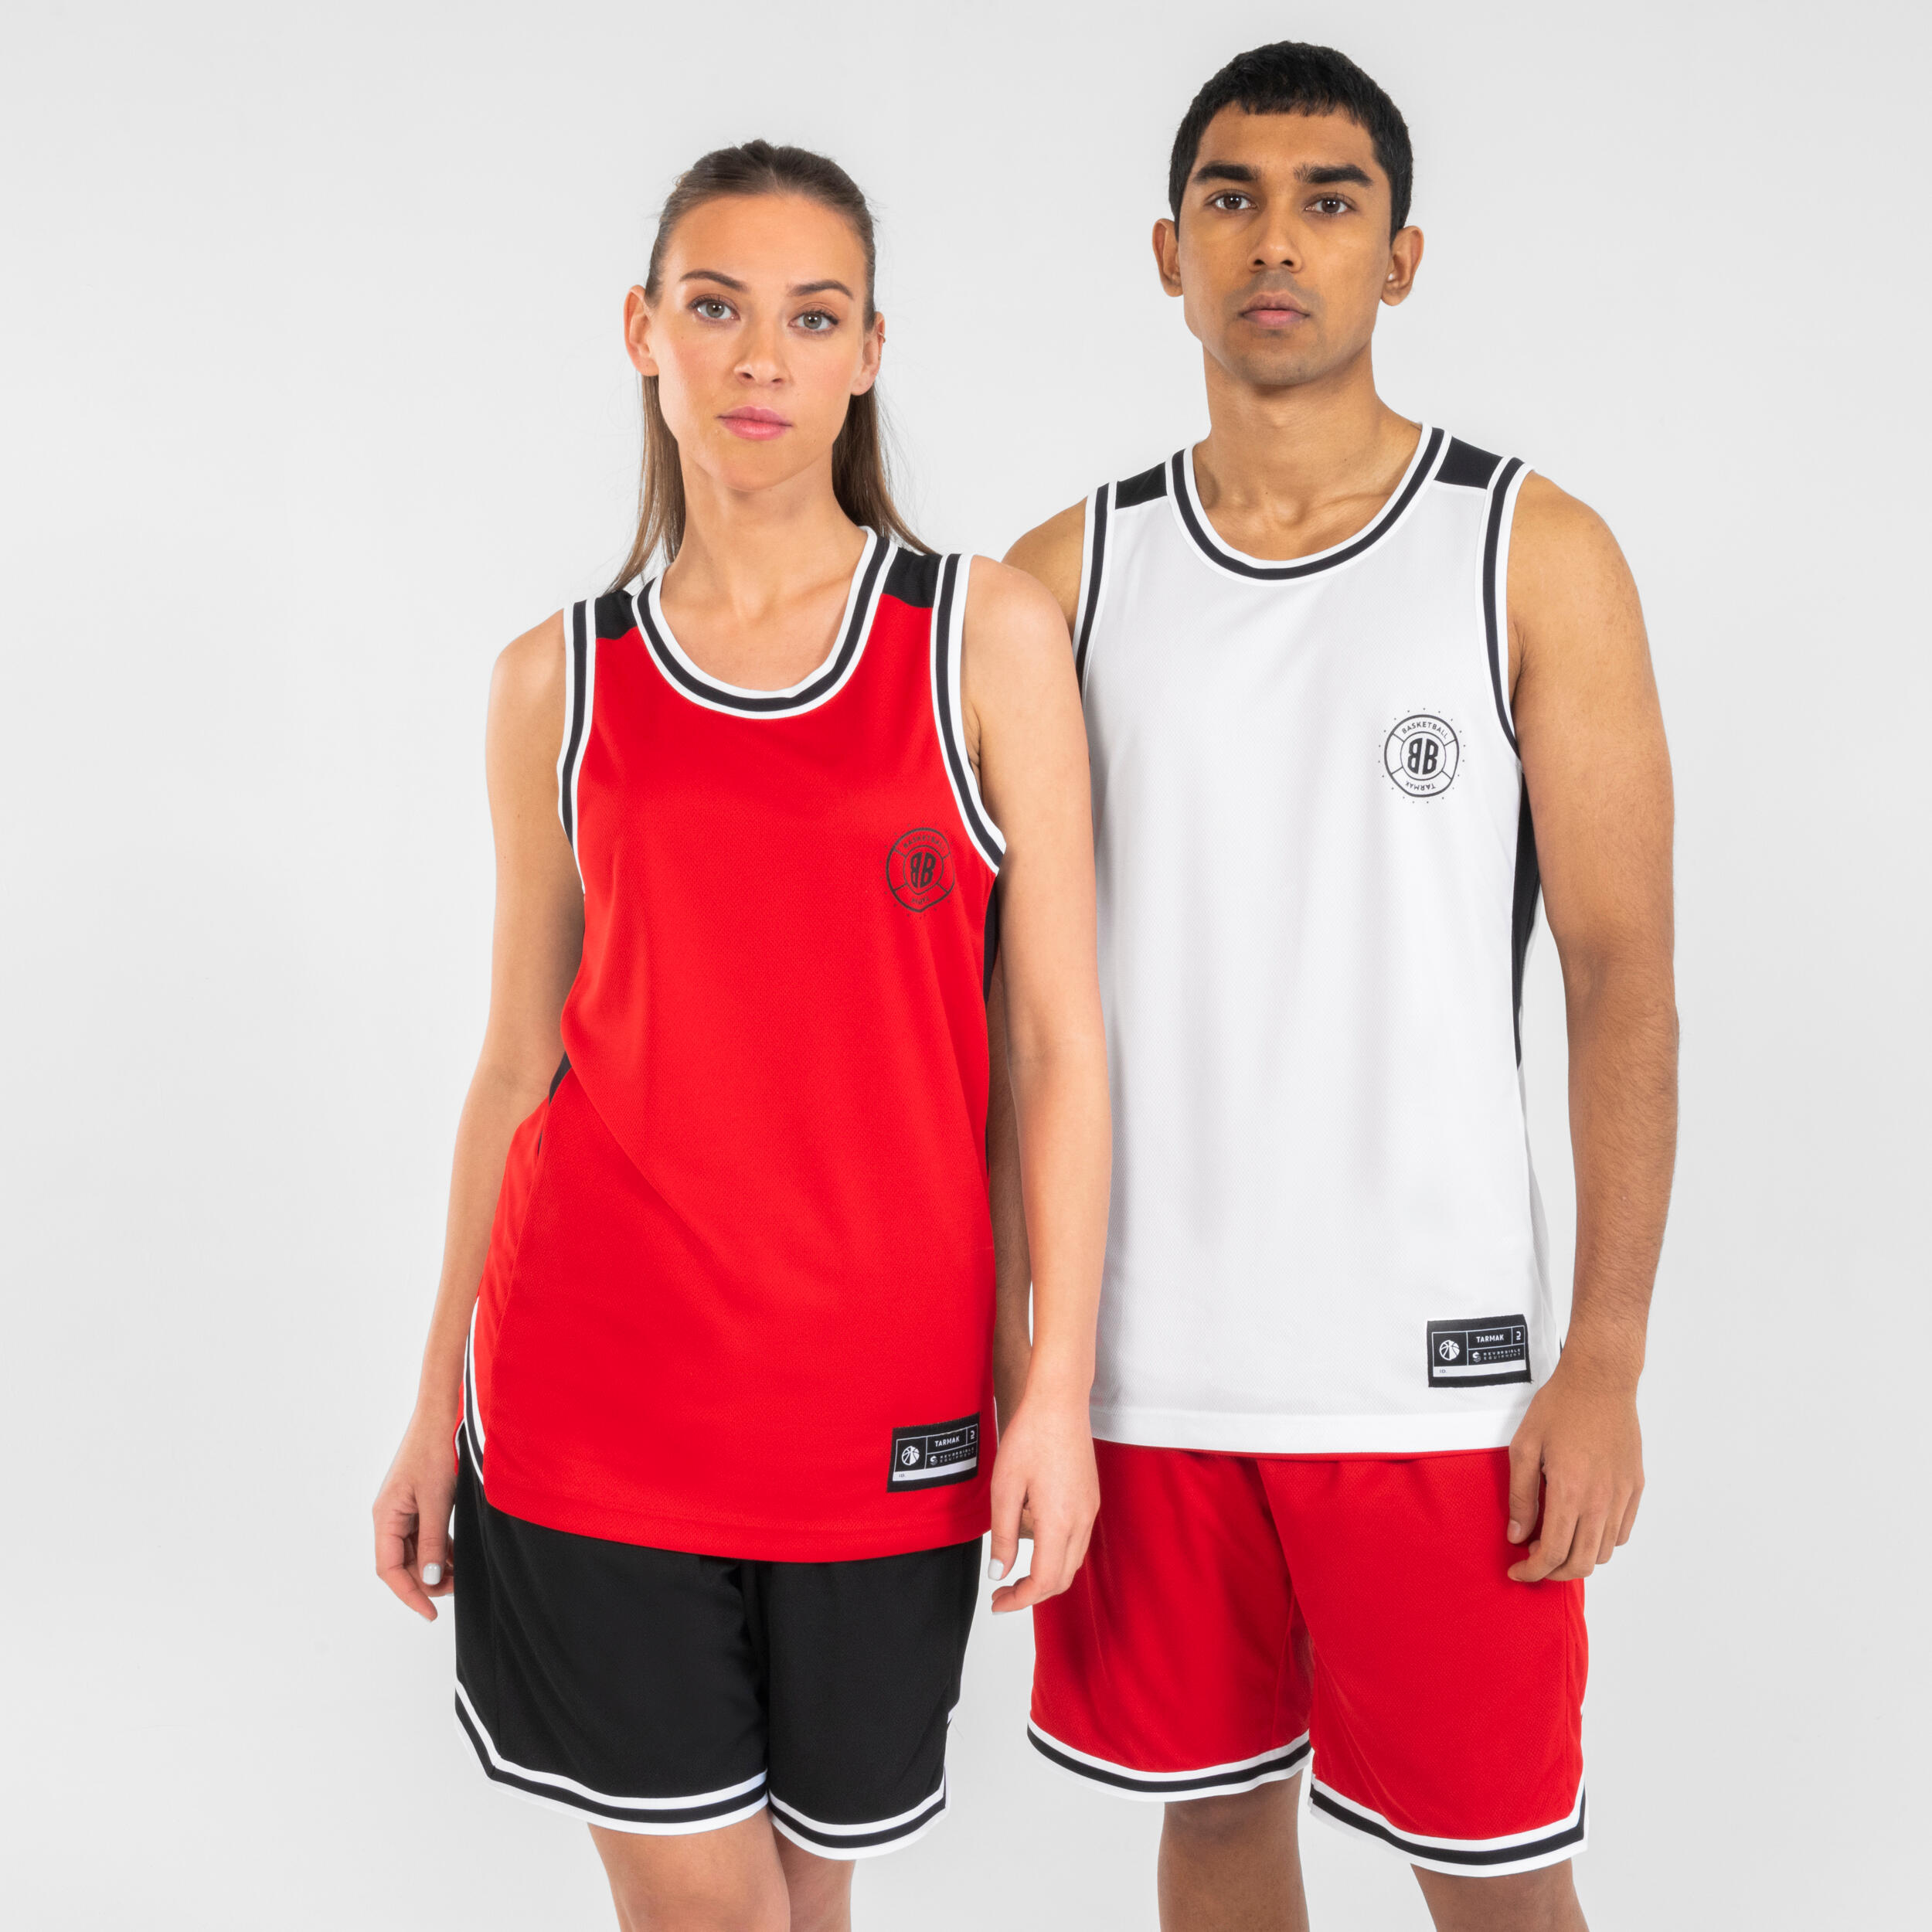 Men's/Women's Reversible Sleeveless Basketball Jersey T500 - White/Red 1/14